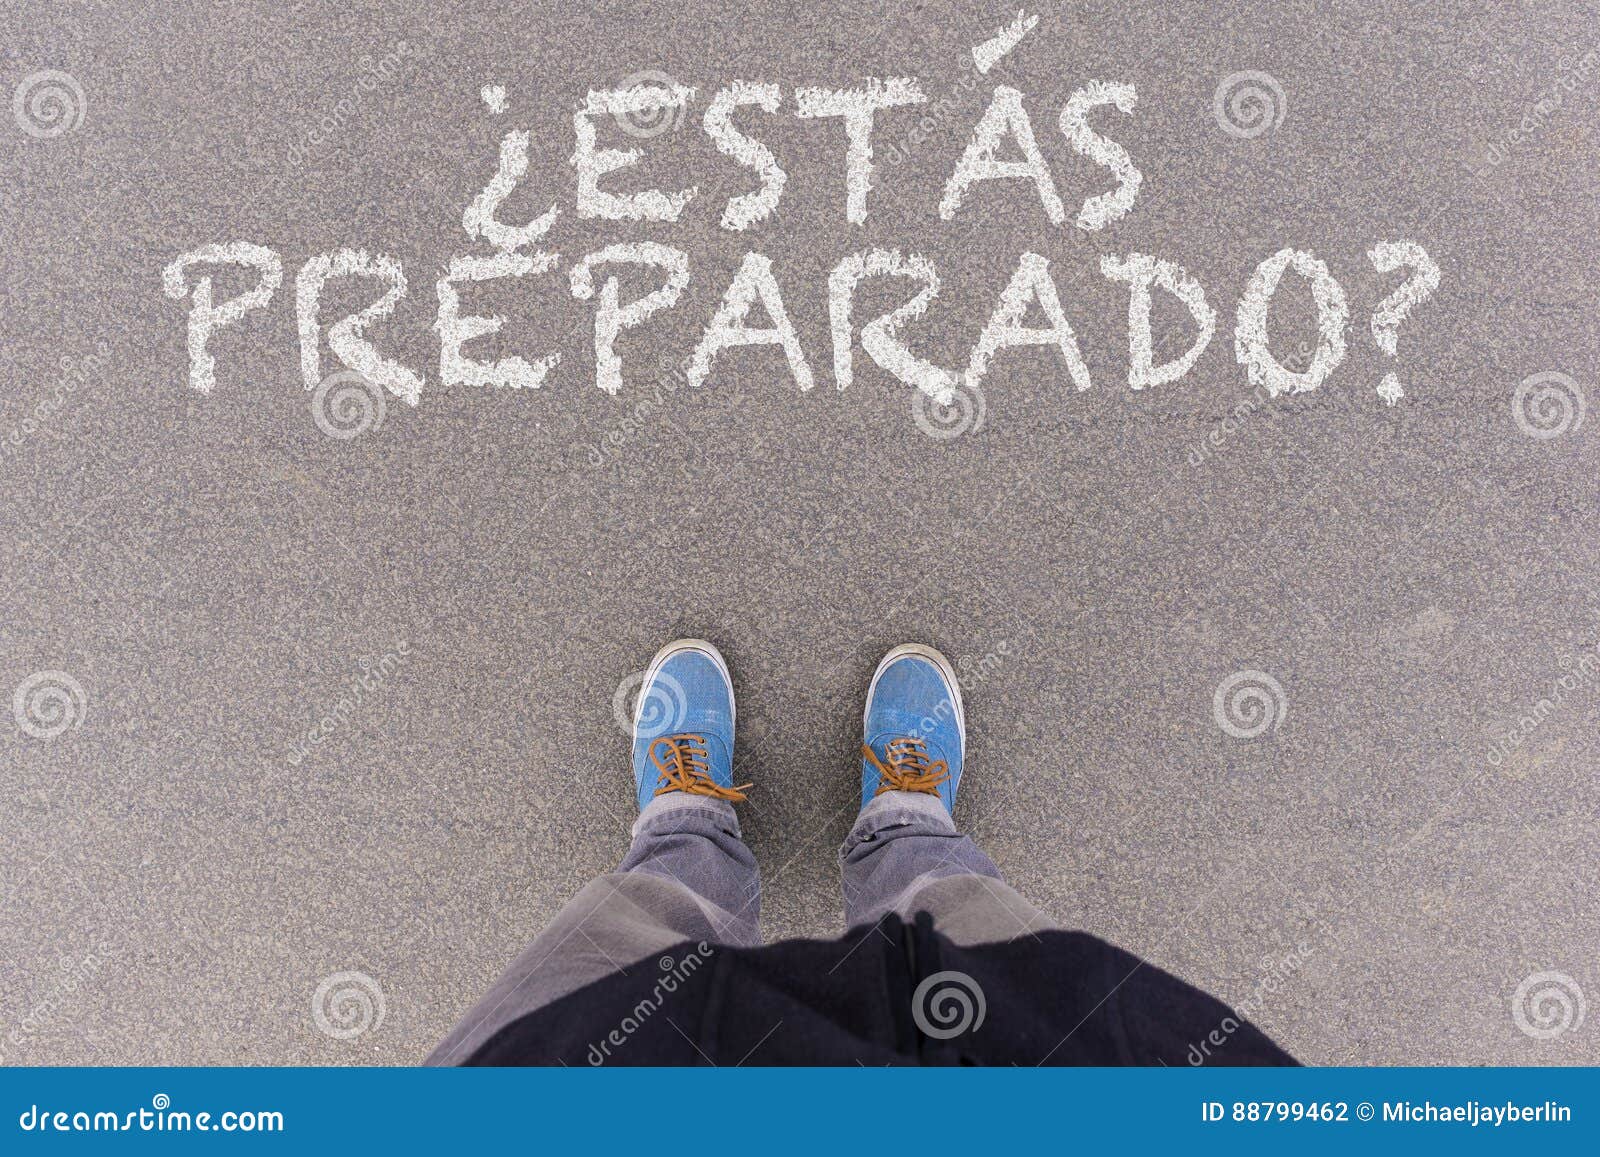 ÃÂ¿estas preparado?, spanish text for are you ready?